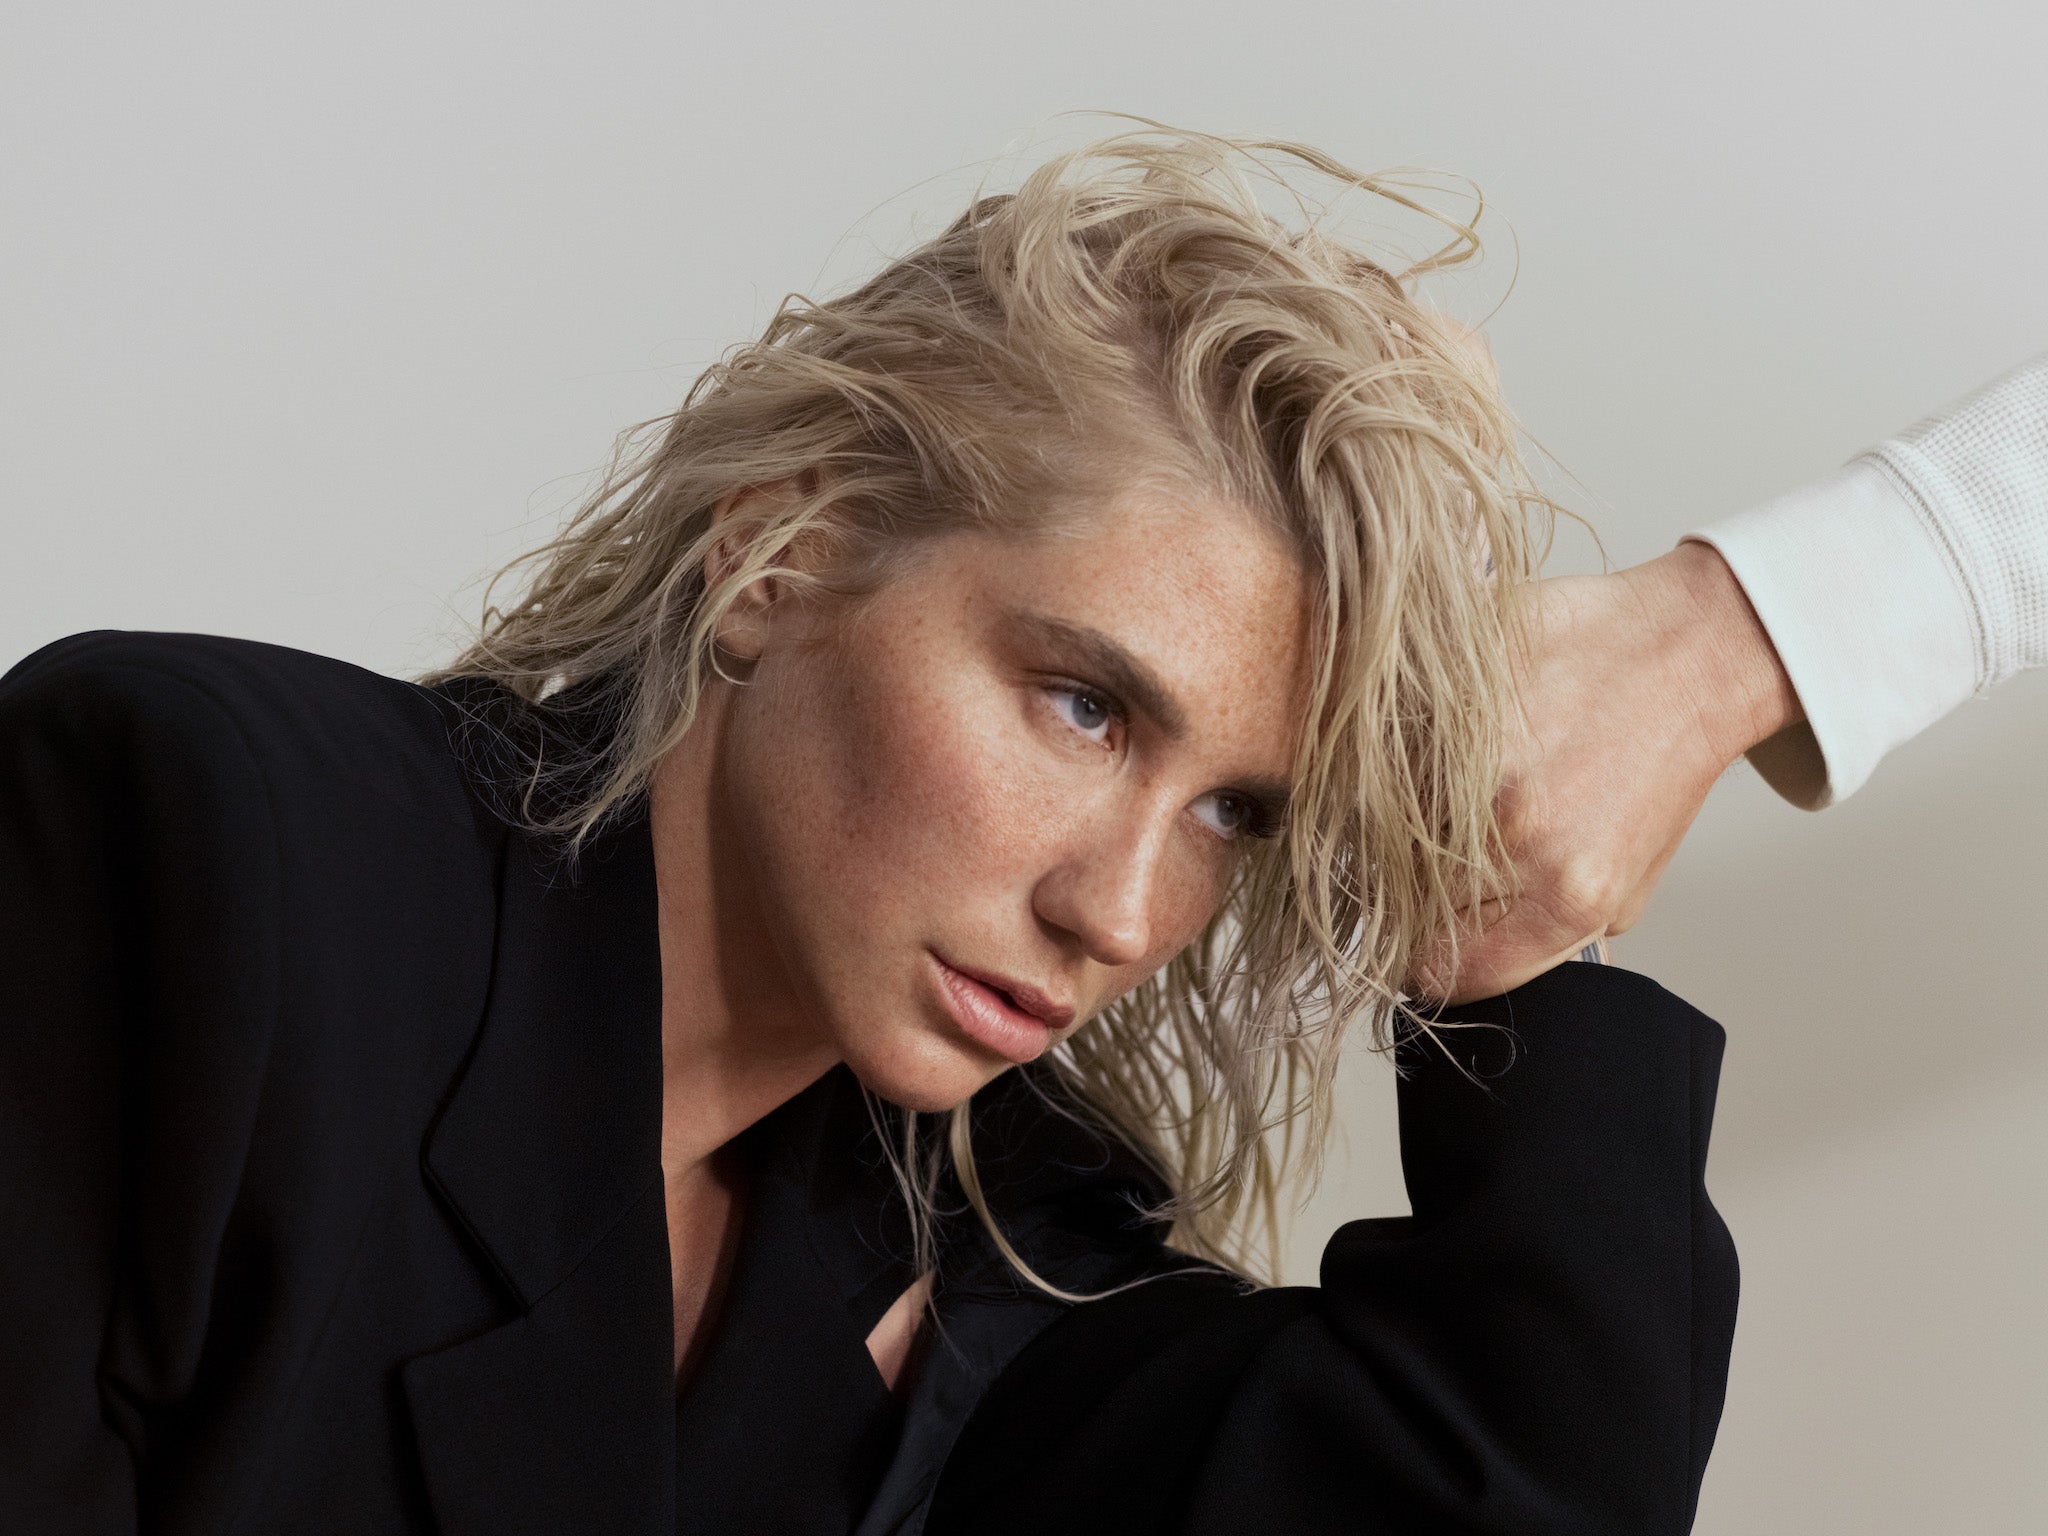 ‘Gag Order’ is the final album Kesha will release under Dr Luke’s former label